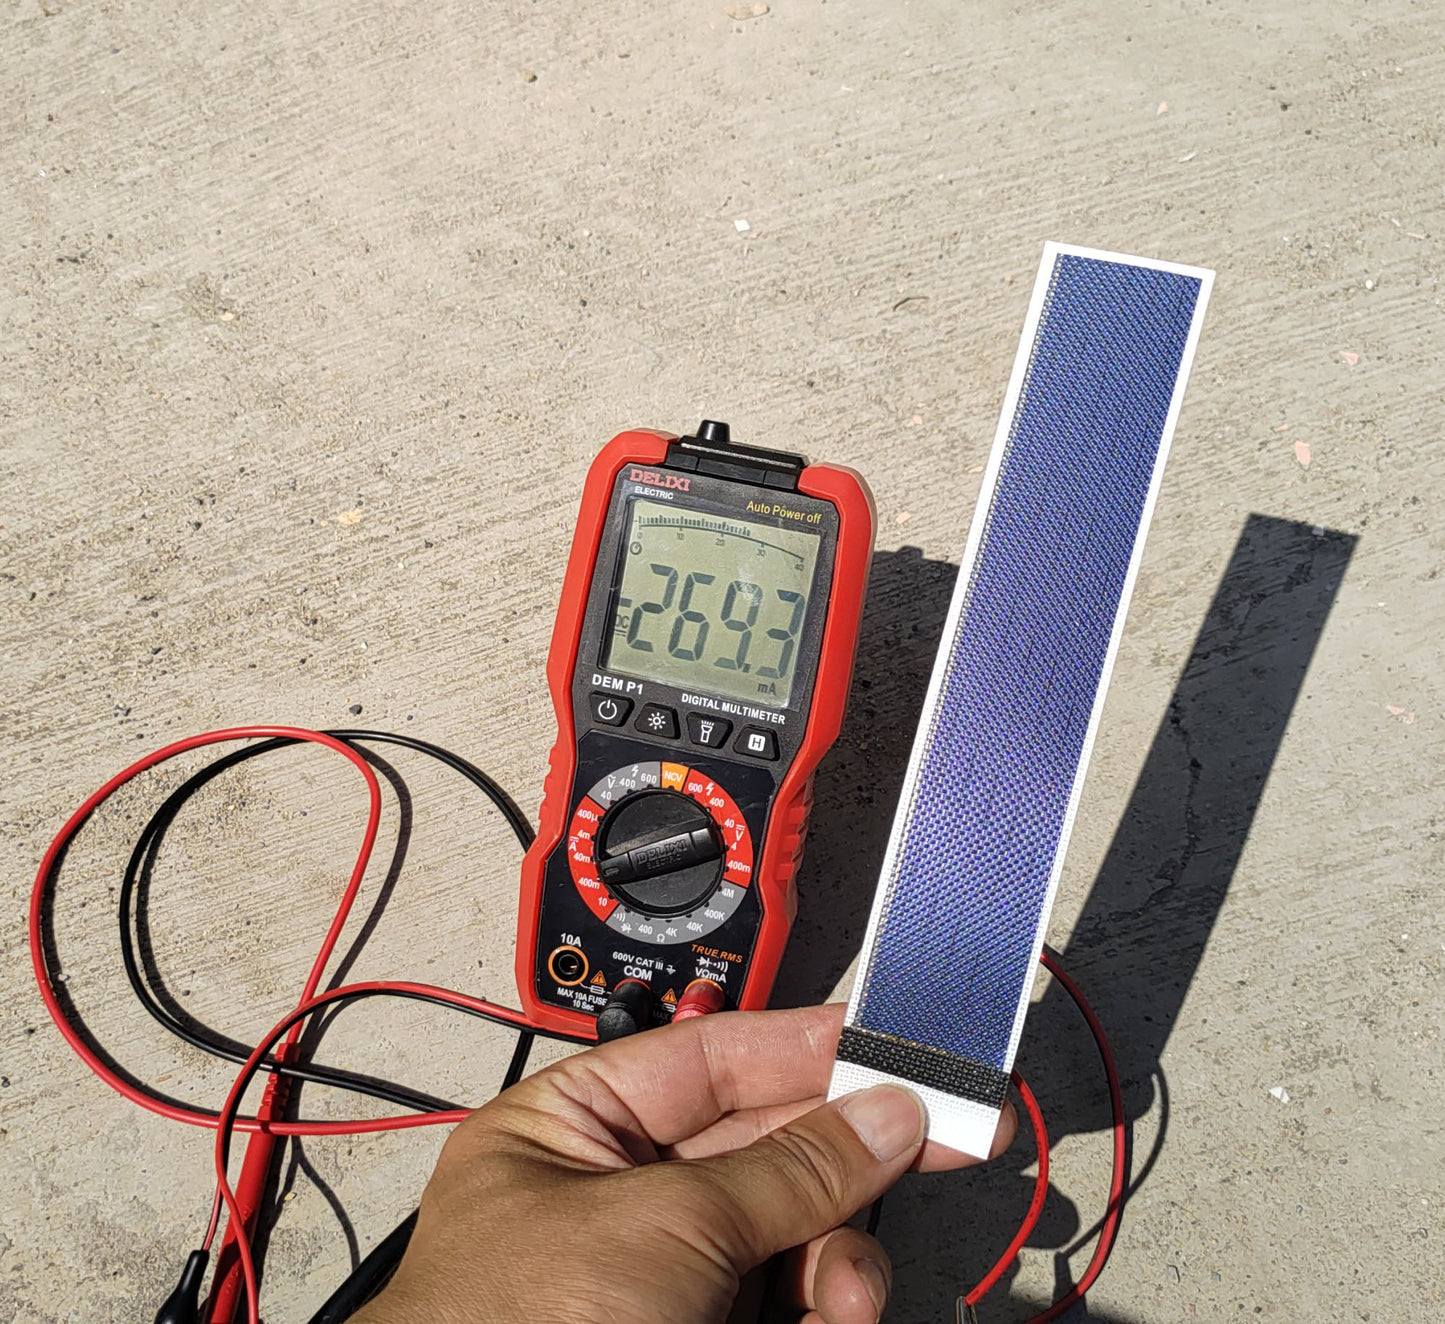 Panneau solaire à couche mince pour chargeur de batterie électronique IoT à faible puissance Cellule solaire flexible Diy Mini projets scientifiques d'énergie solaire